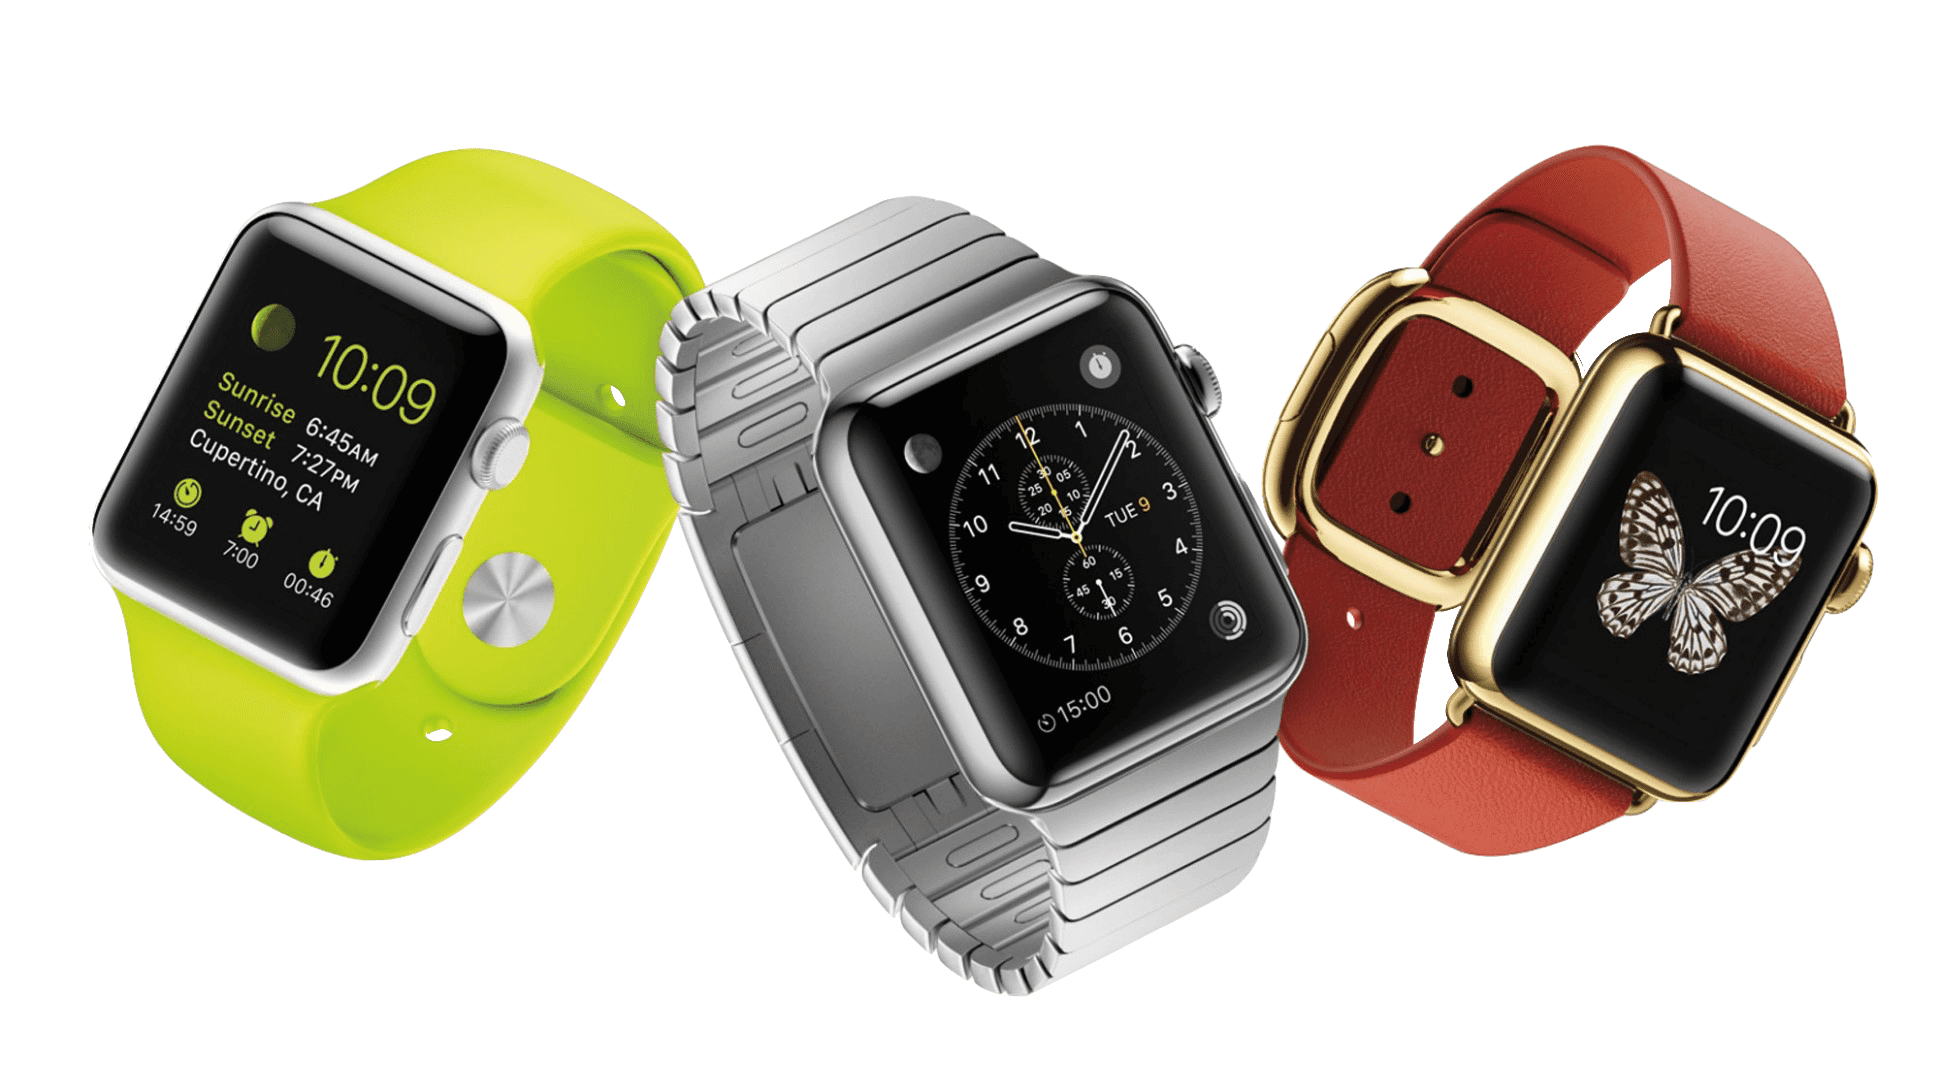 Apple lance un nouveau Macbook et l'Apple Watch 3